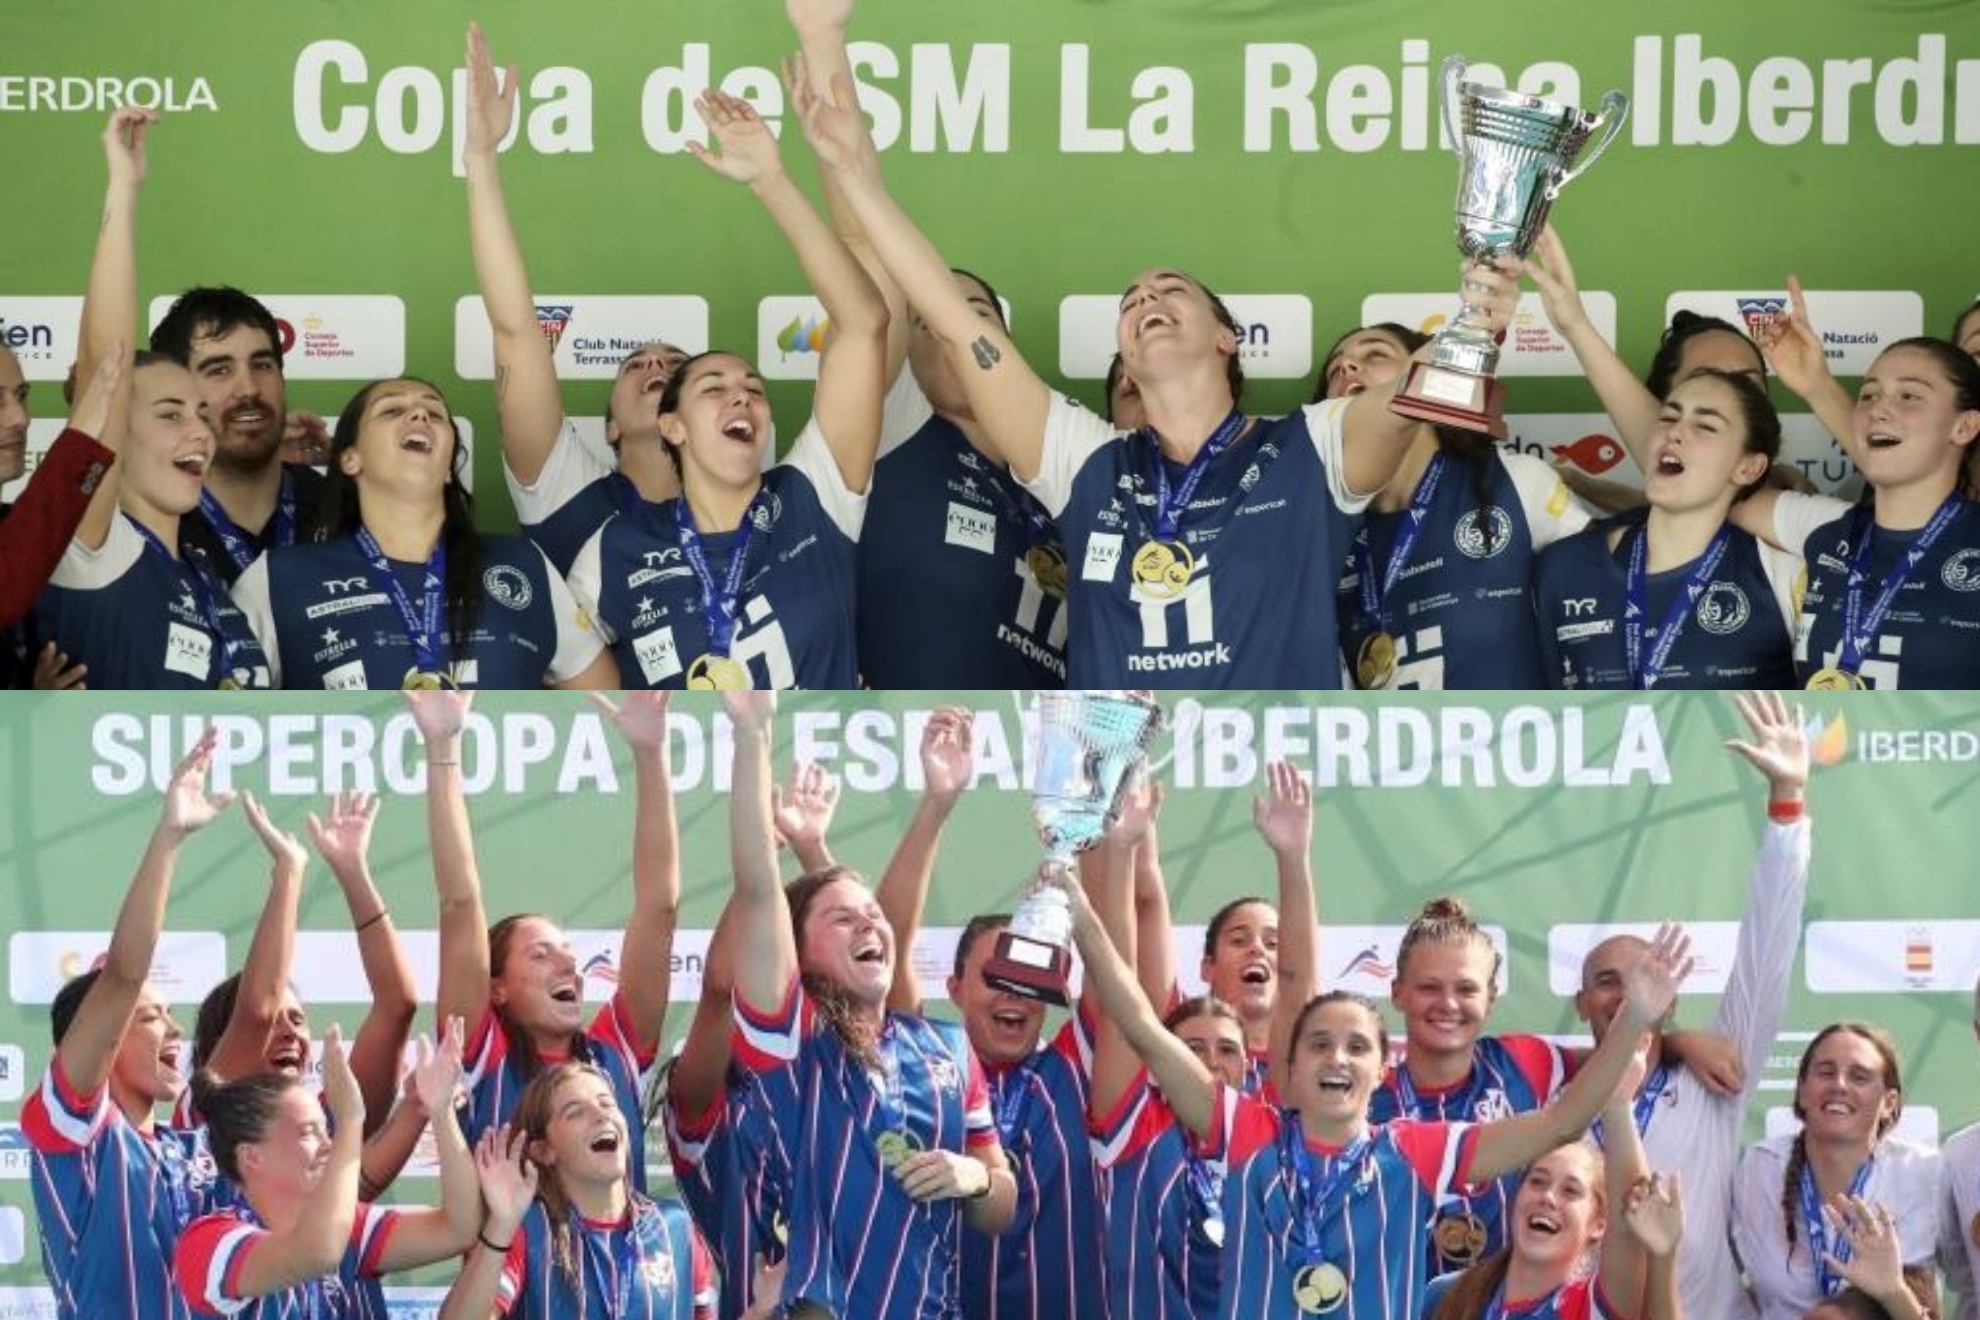 El Astralpool Sabadell, campeón de la Copa dela Reina, y el Assolim Mataró, ganador de la Supercopa esta temporada